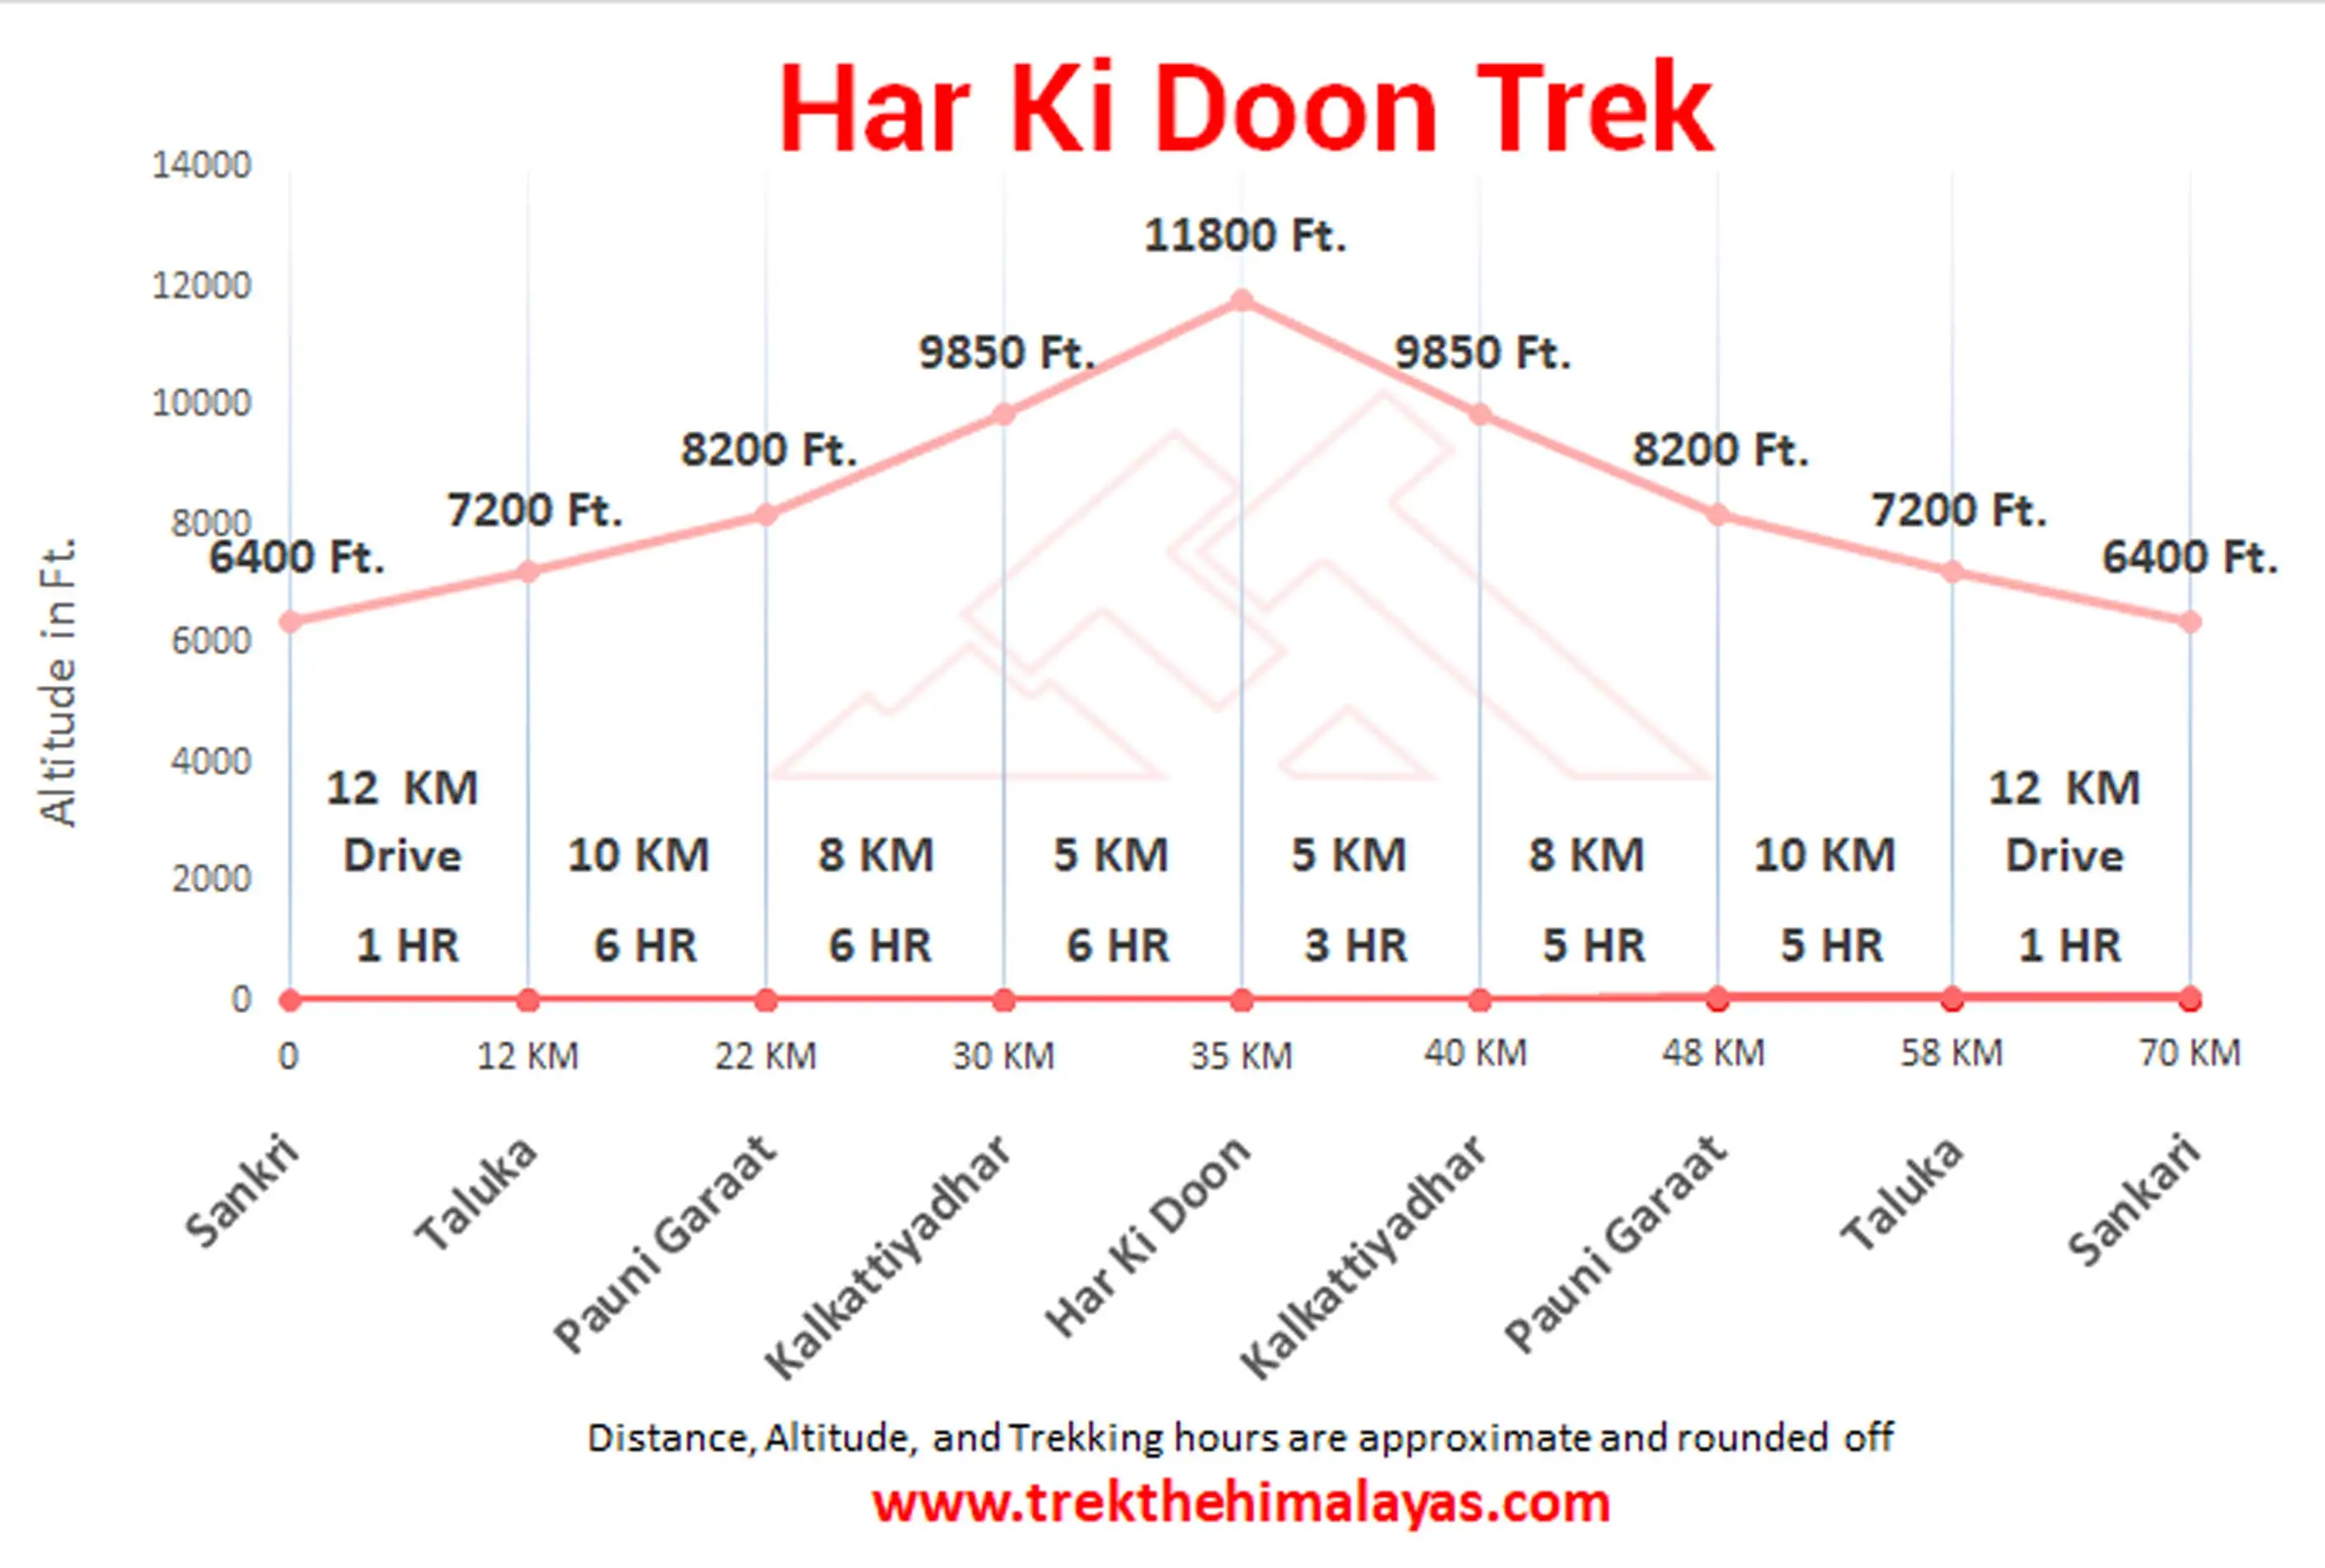 Har Ki Doon Trek Maps